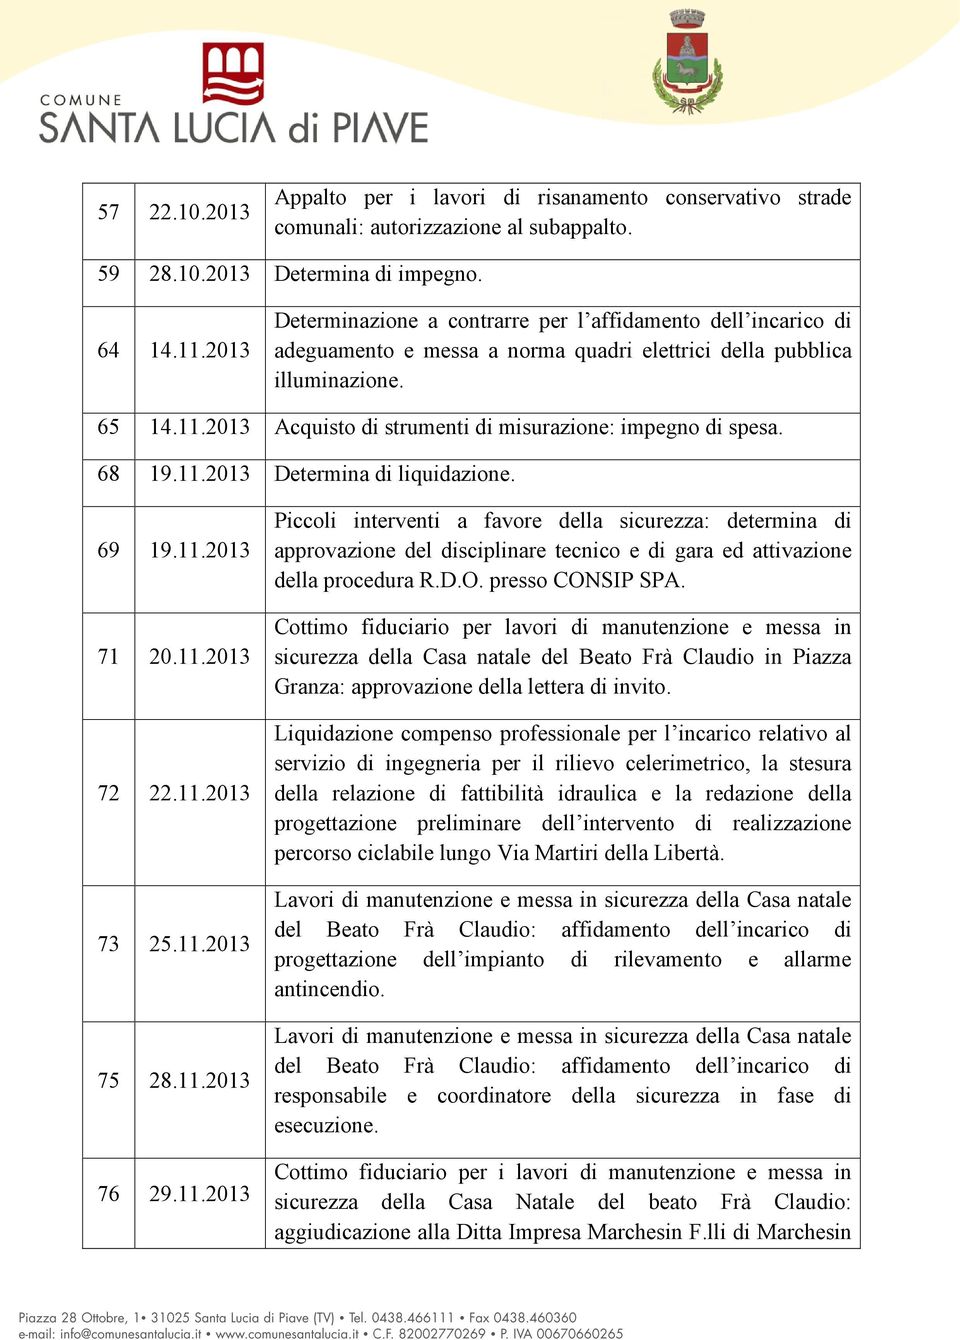 2013 Acquisto di strumenti di misurazione: impegno di spesa. 68 19.11.